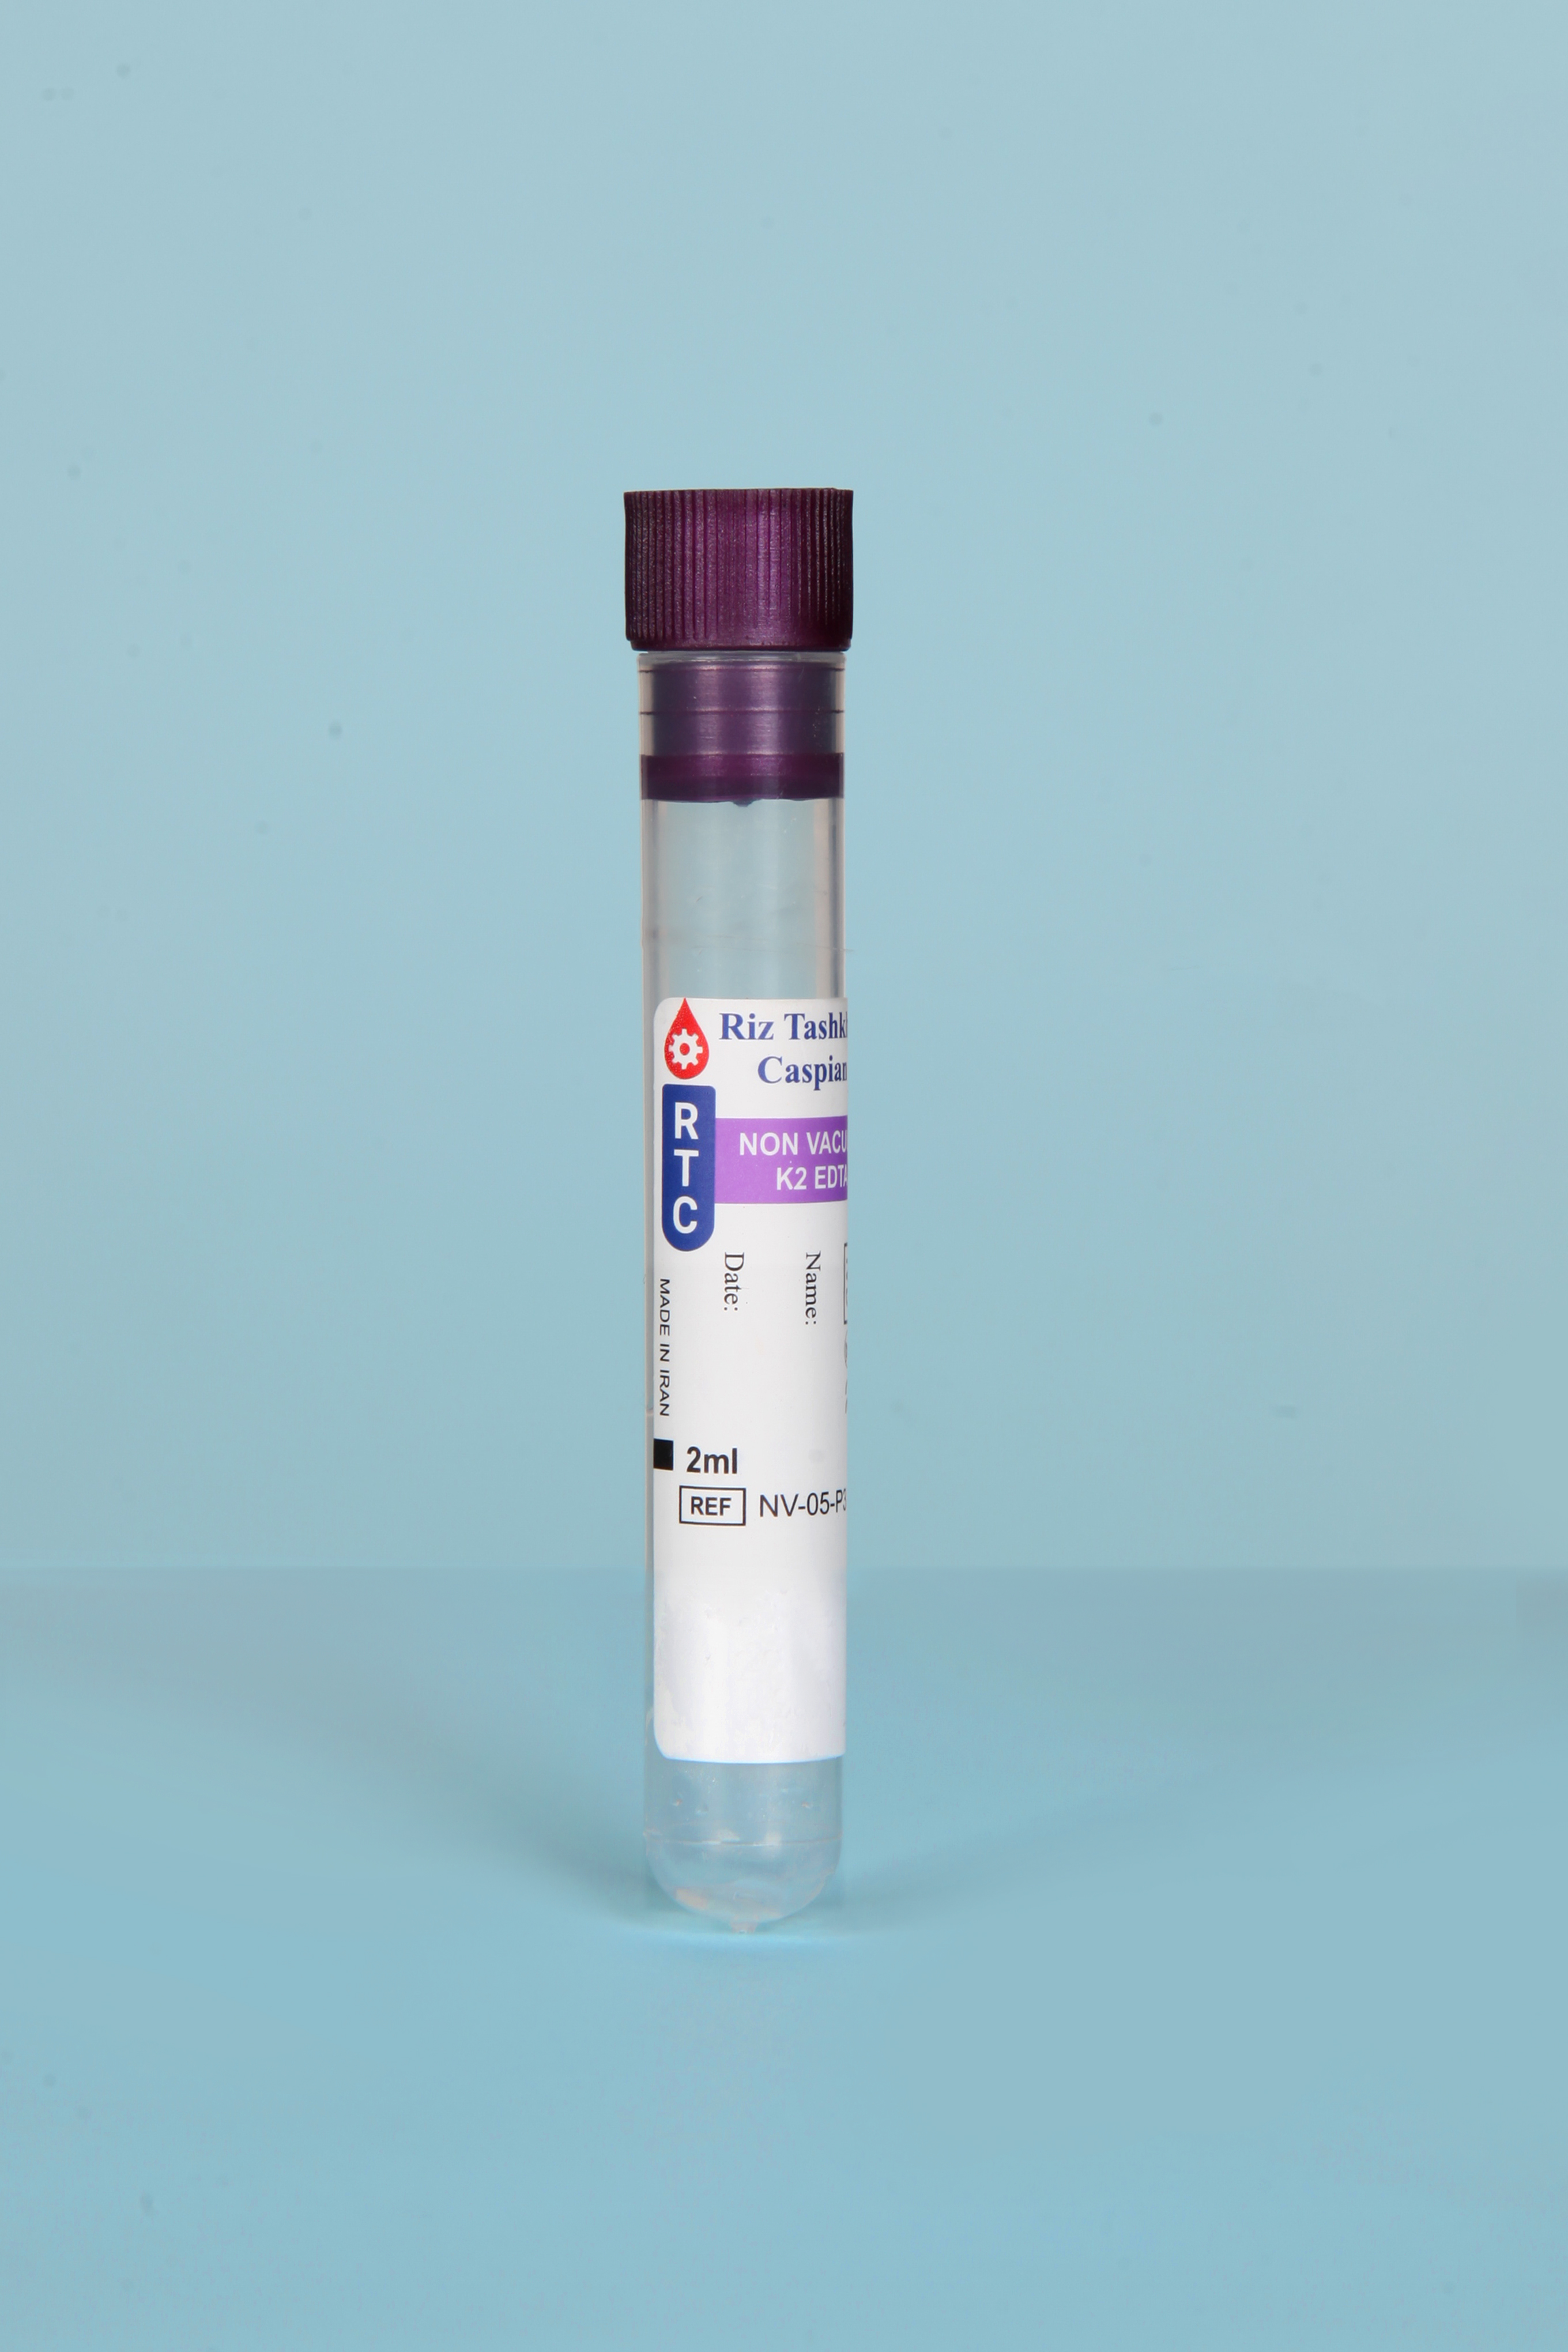 لوله خون گیری حاوی EDTA K2 CBC (بدون خلاء)- 2ml - Non Vacuum Blood Collection Test Tube  EDTA K2 CBC- 2ml - RTC - مصرفی - هماتولوژی و بانک خون - ریز تشخیص کاسپین